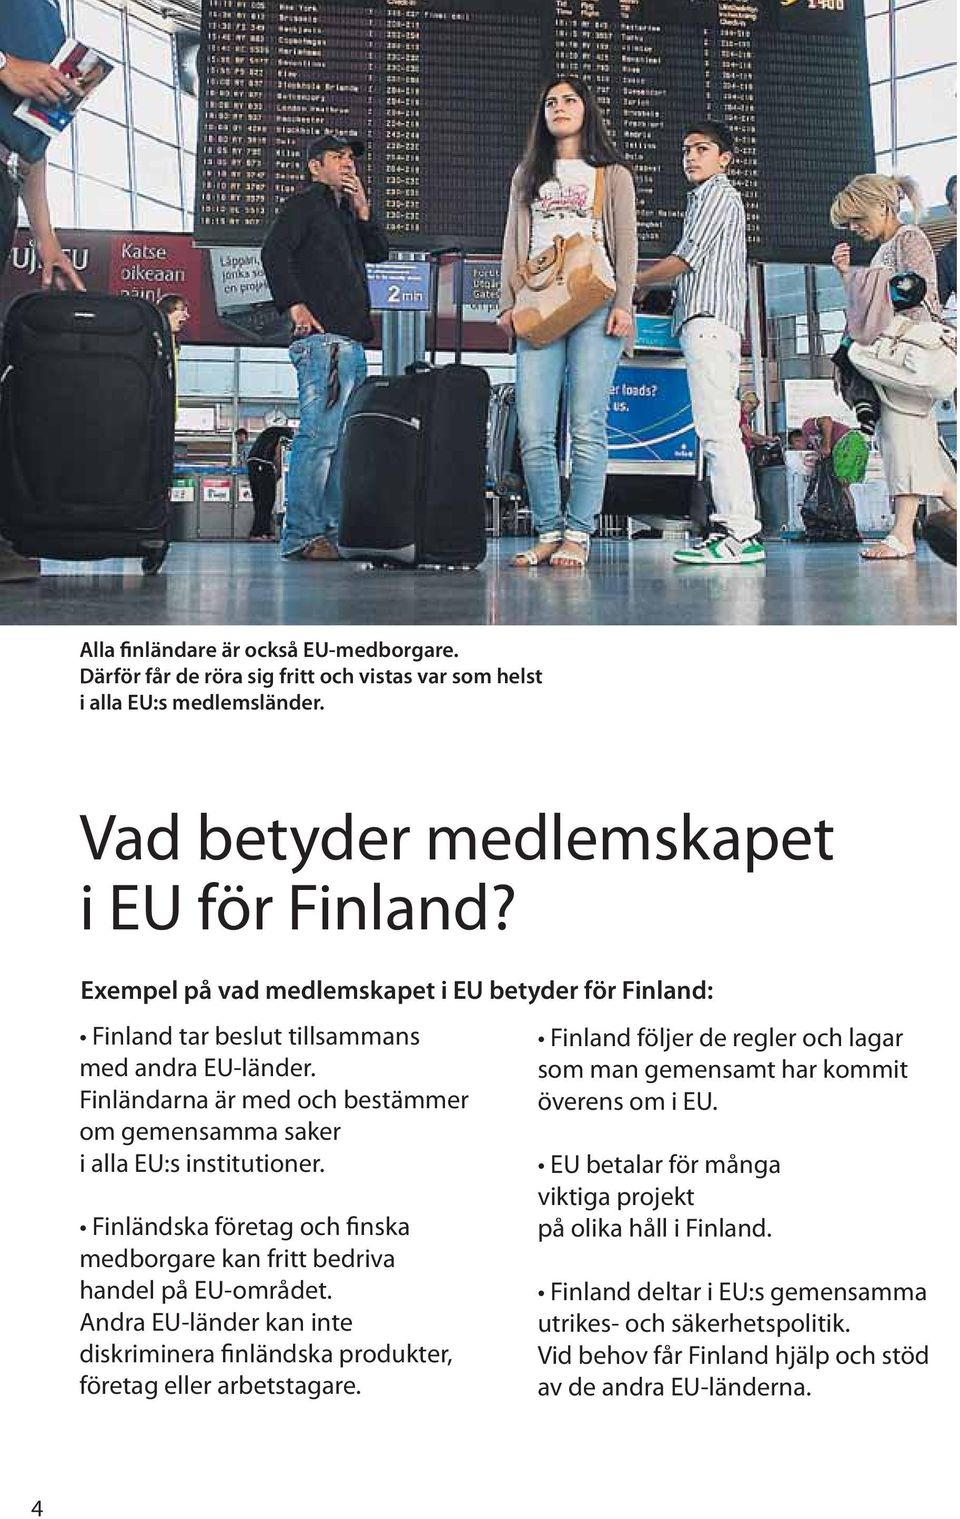 Finla ndska fo retag och finska medborgare kan fritt bedriva handel på EU-området. Andra EU-la nder kan inte diskriminera finla ndska produkter, fo retag eller arbetstagare.